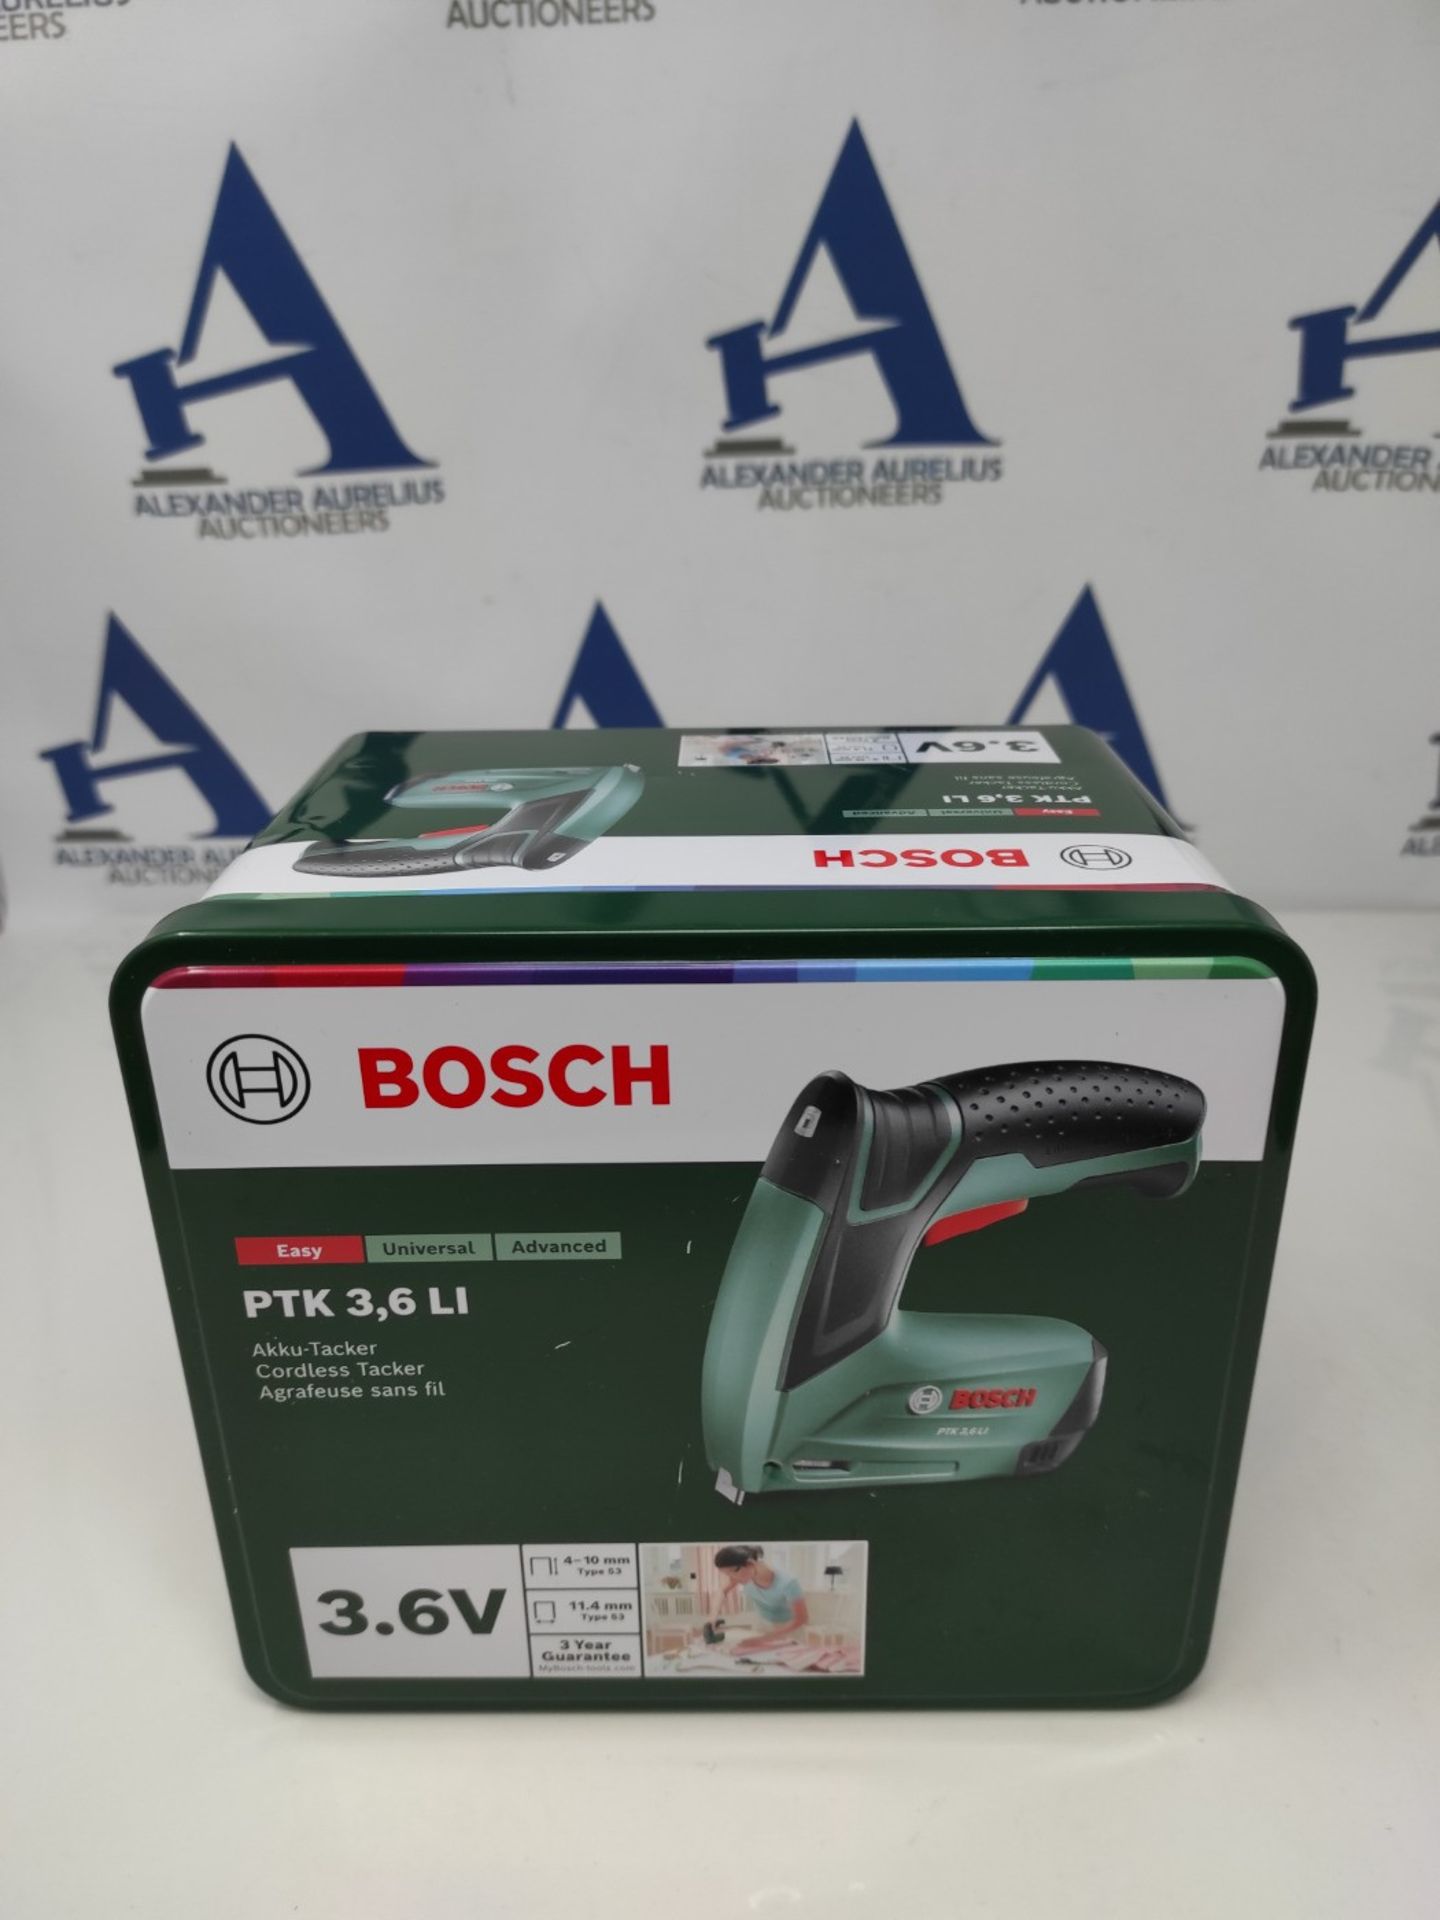 RRP £73.00 Bosch Home and Garden Cordless Stapler - PTK 3.6 LI (integrated battery, 3.6 V, 30 imp - Image 2 of 3